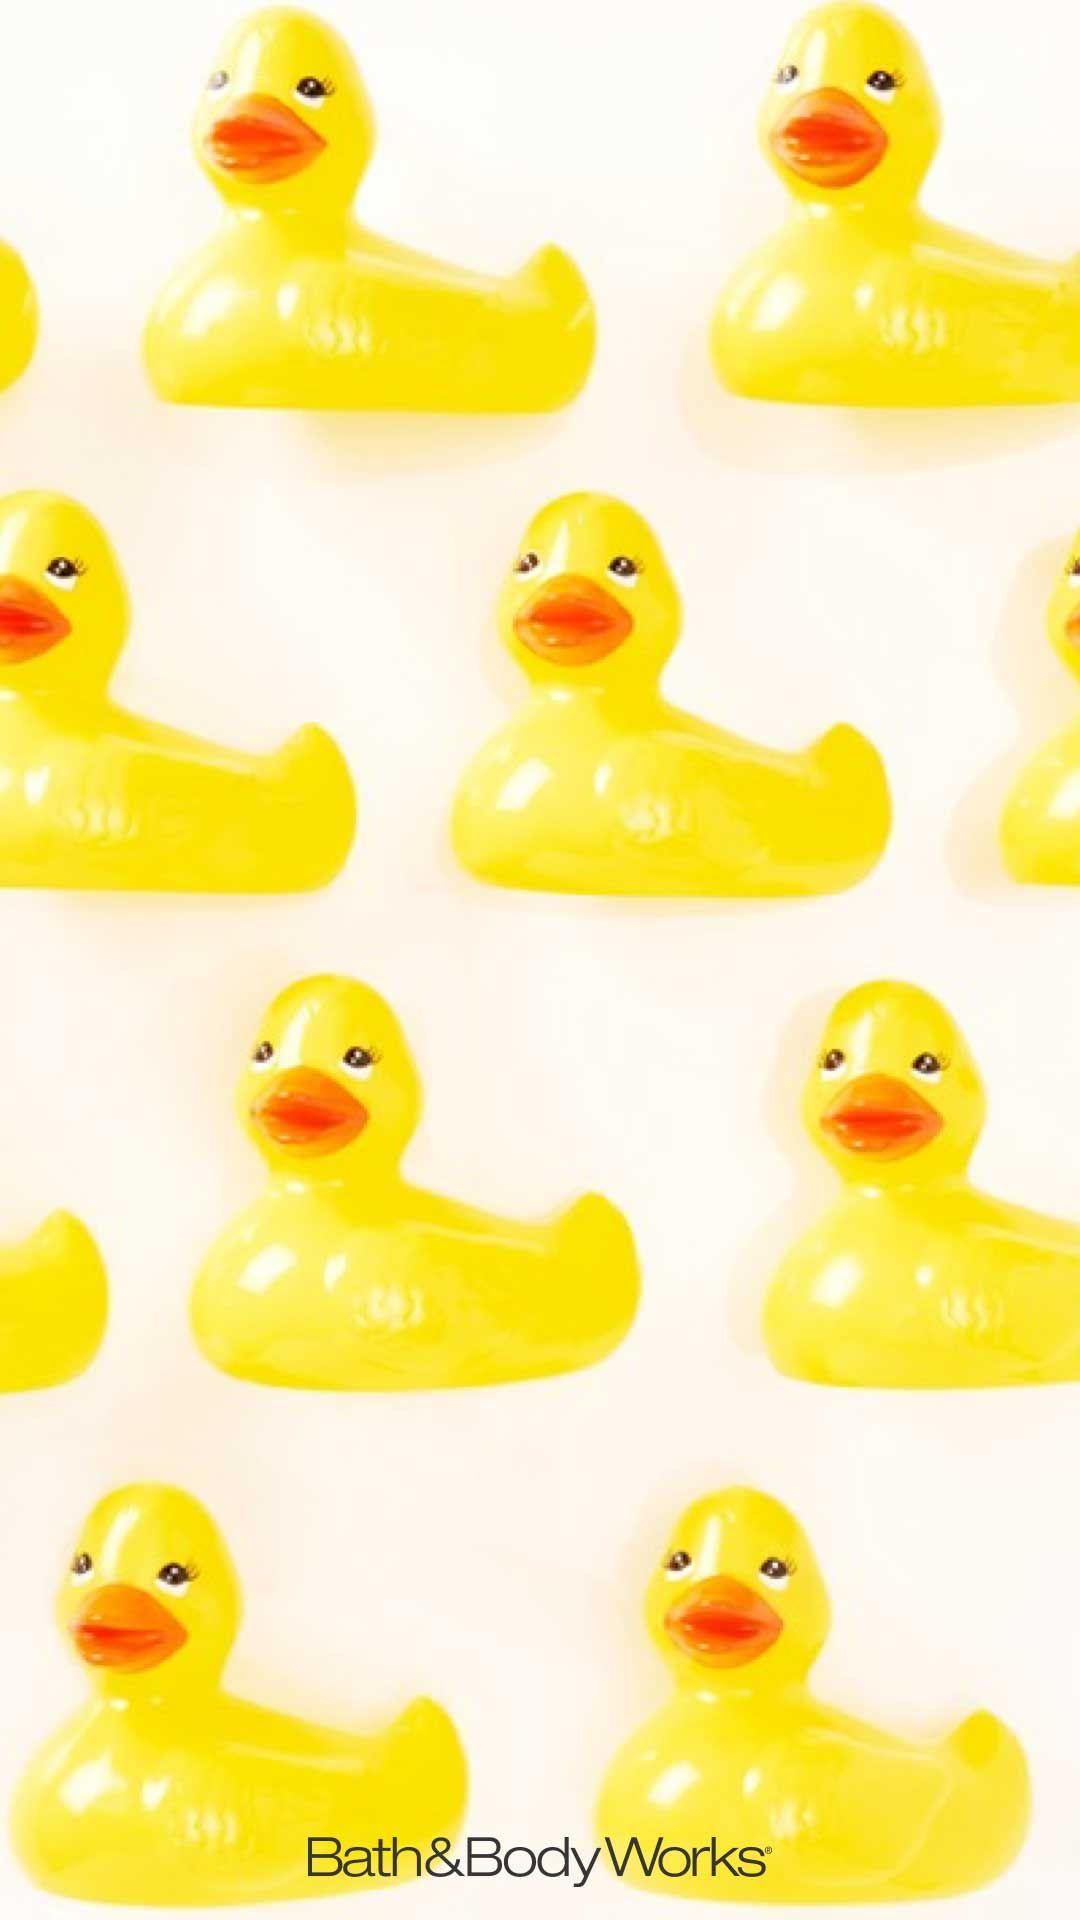 Rubber Duck iPhone Wallpaper. Duck, Wallpaper, Duck wallpaper